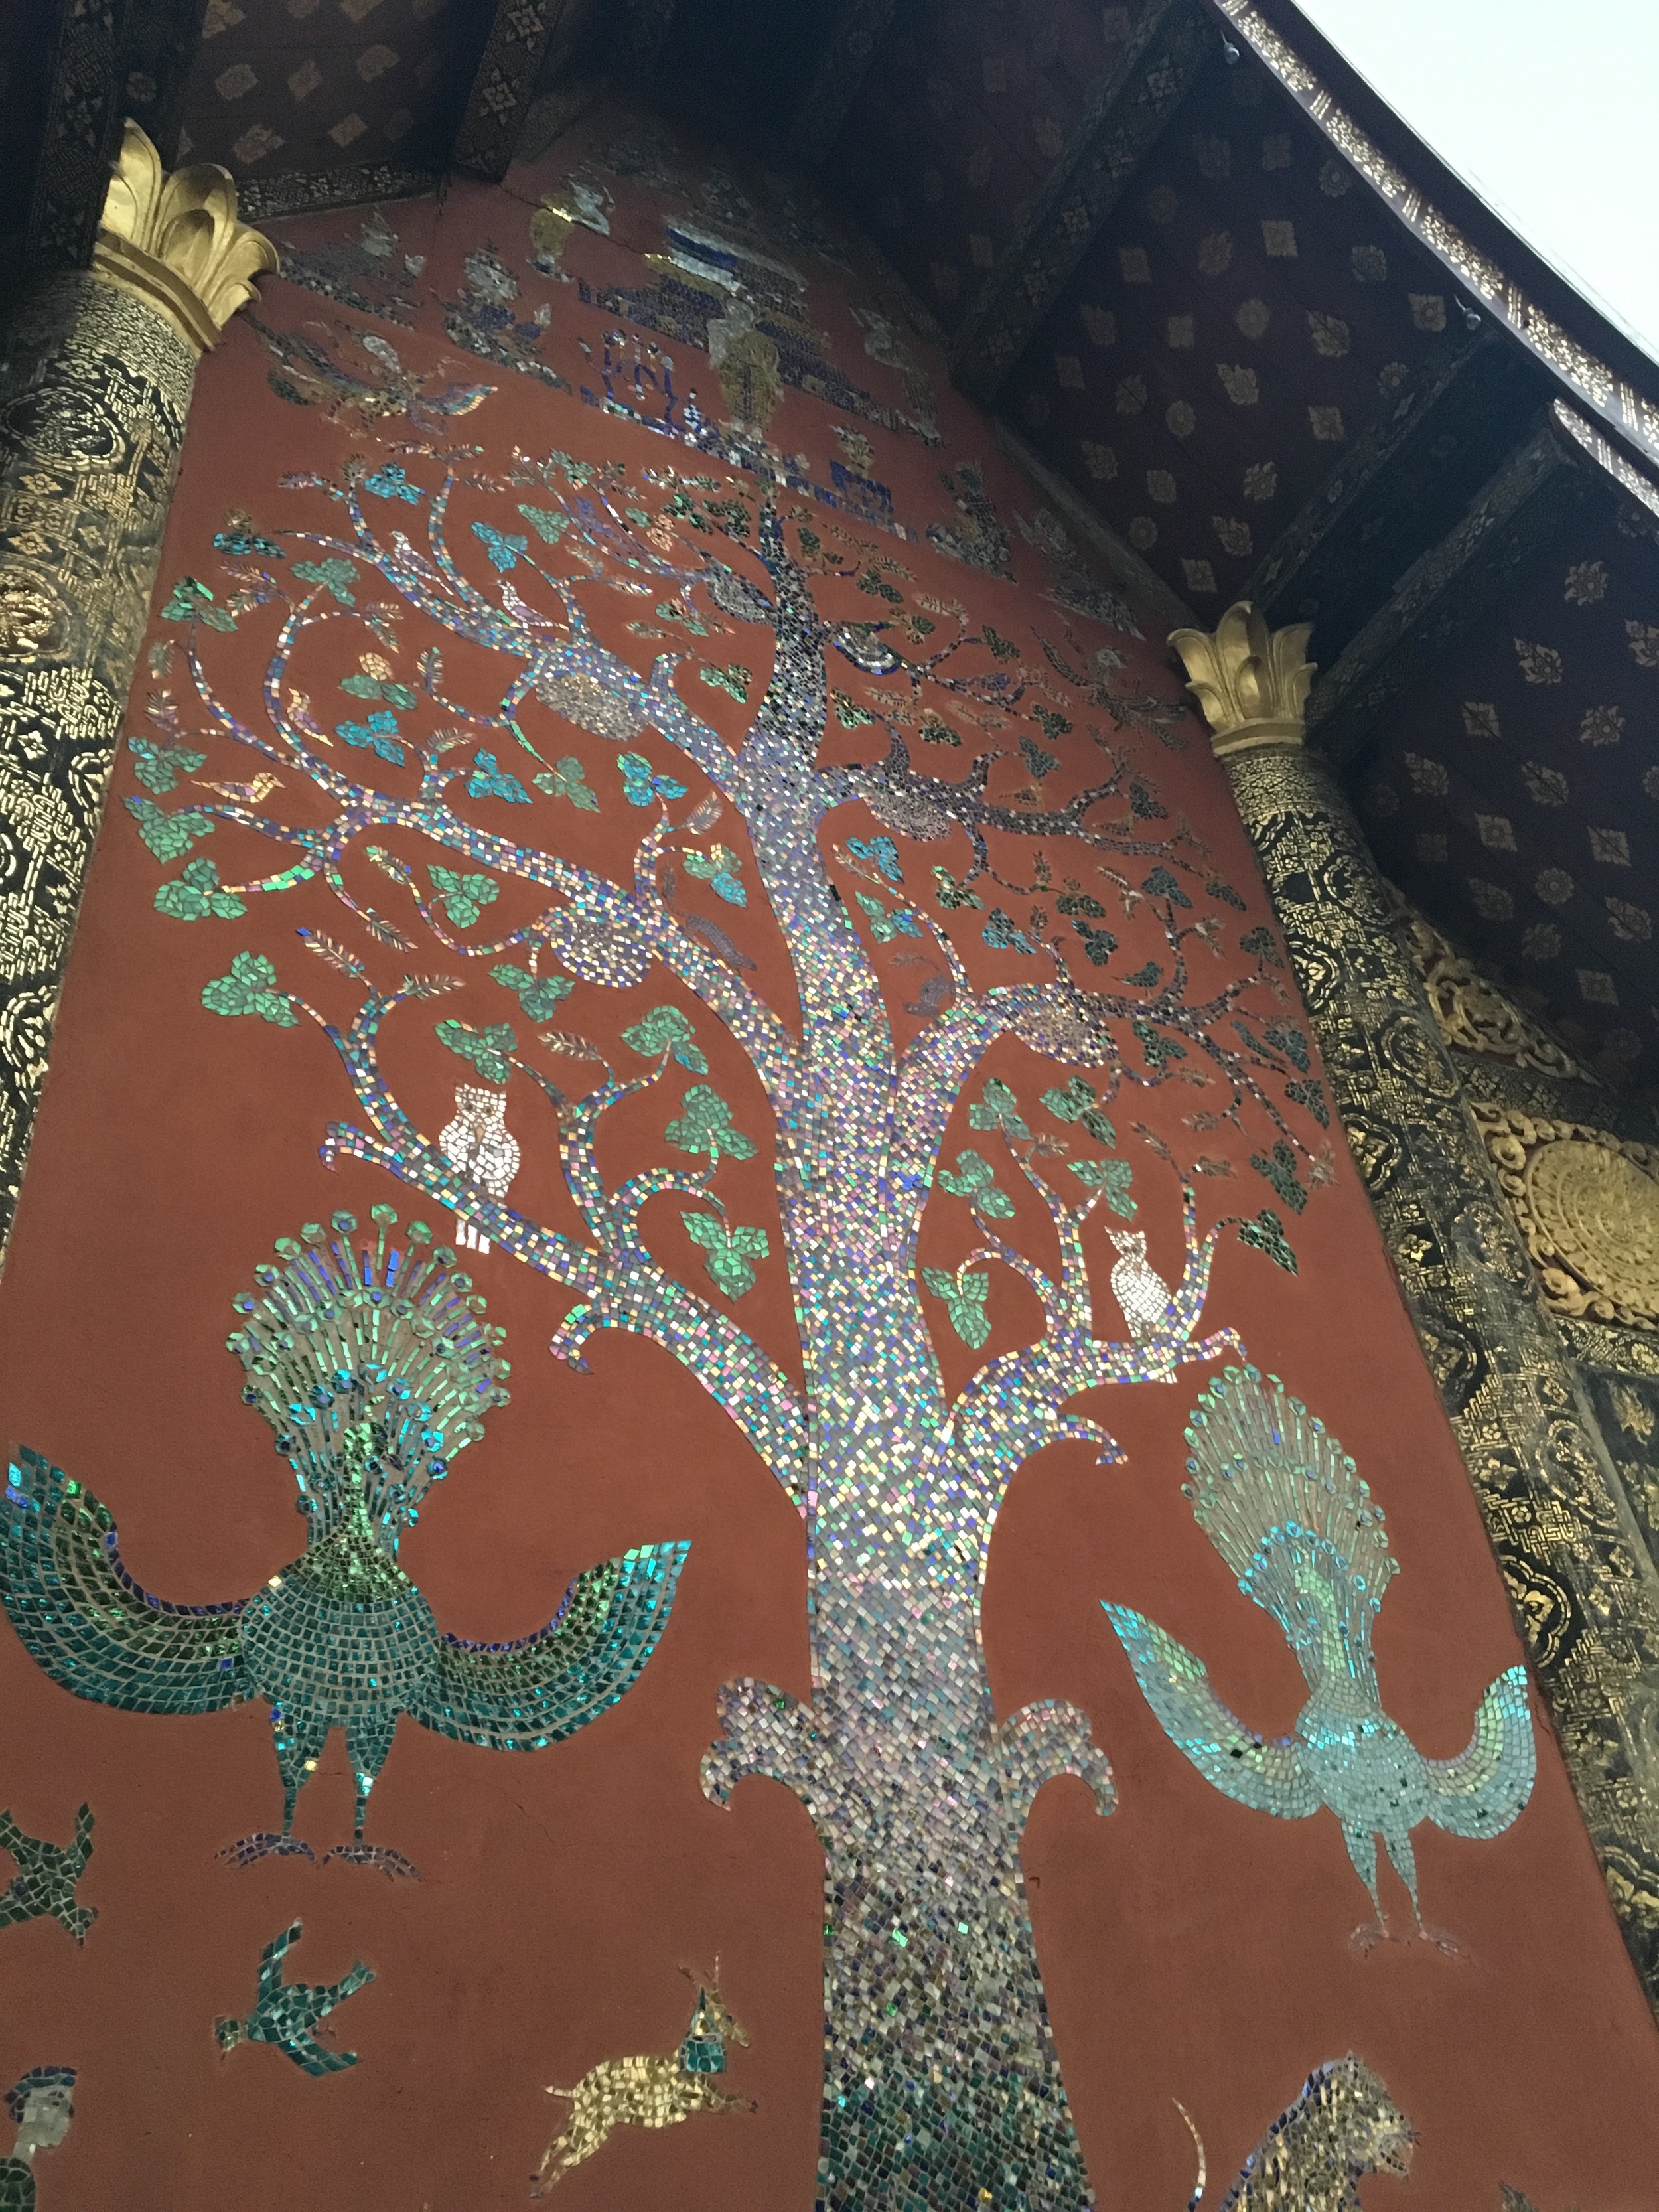 Beautiful tile mosaics at Wat Xieng Thong